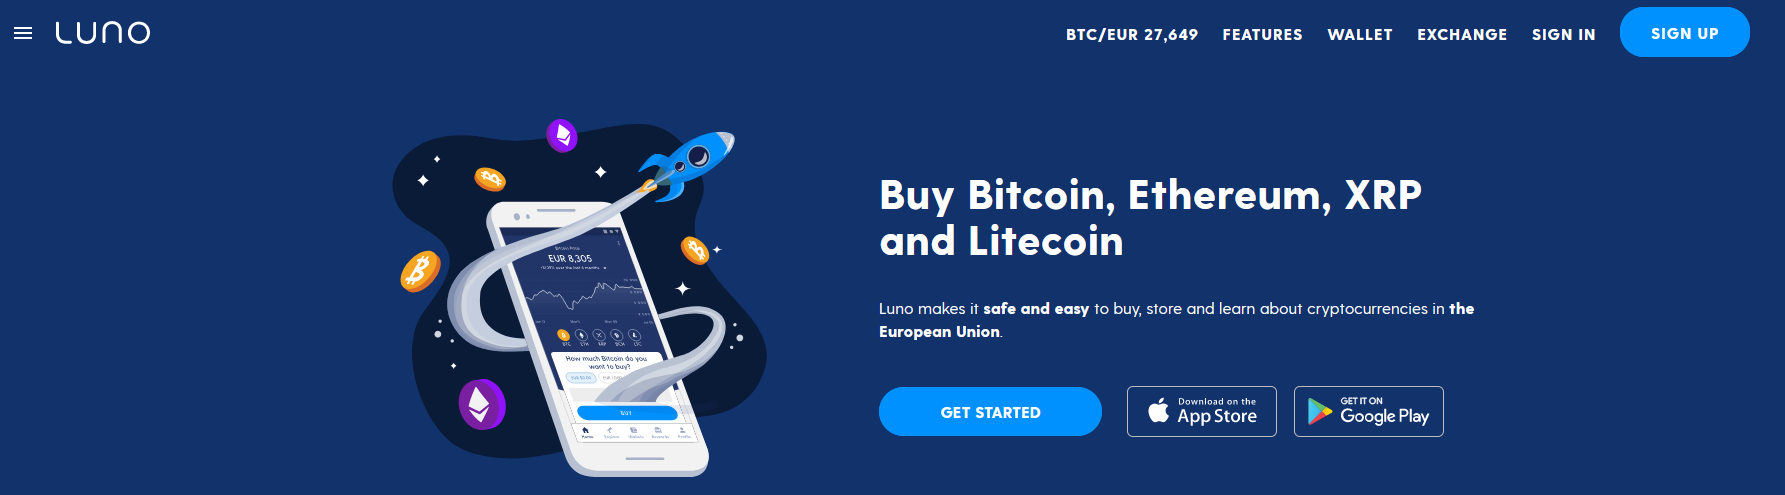 Lander, die Luno verwenden konnen, um Bitcoin zu kaufen